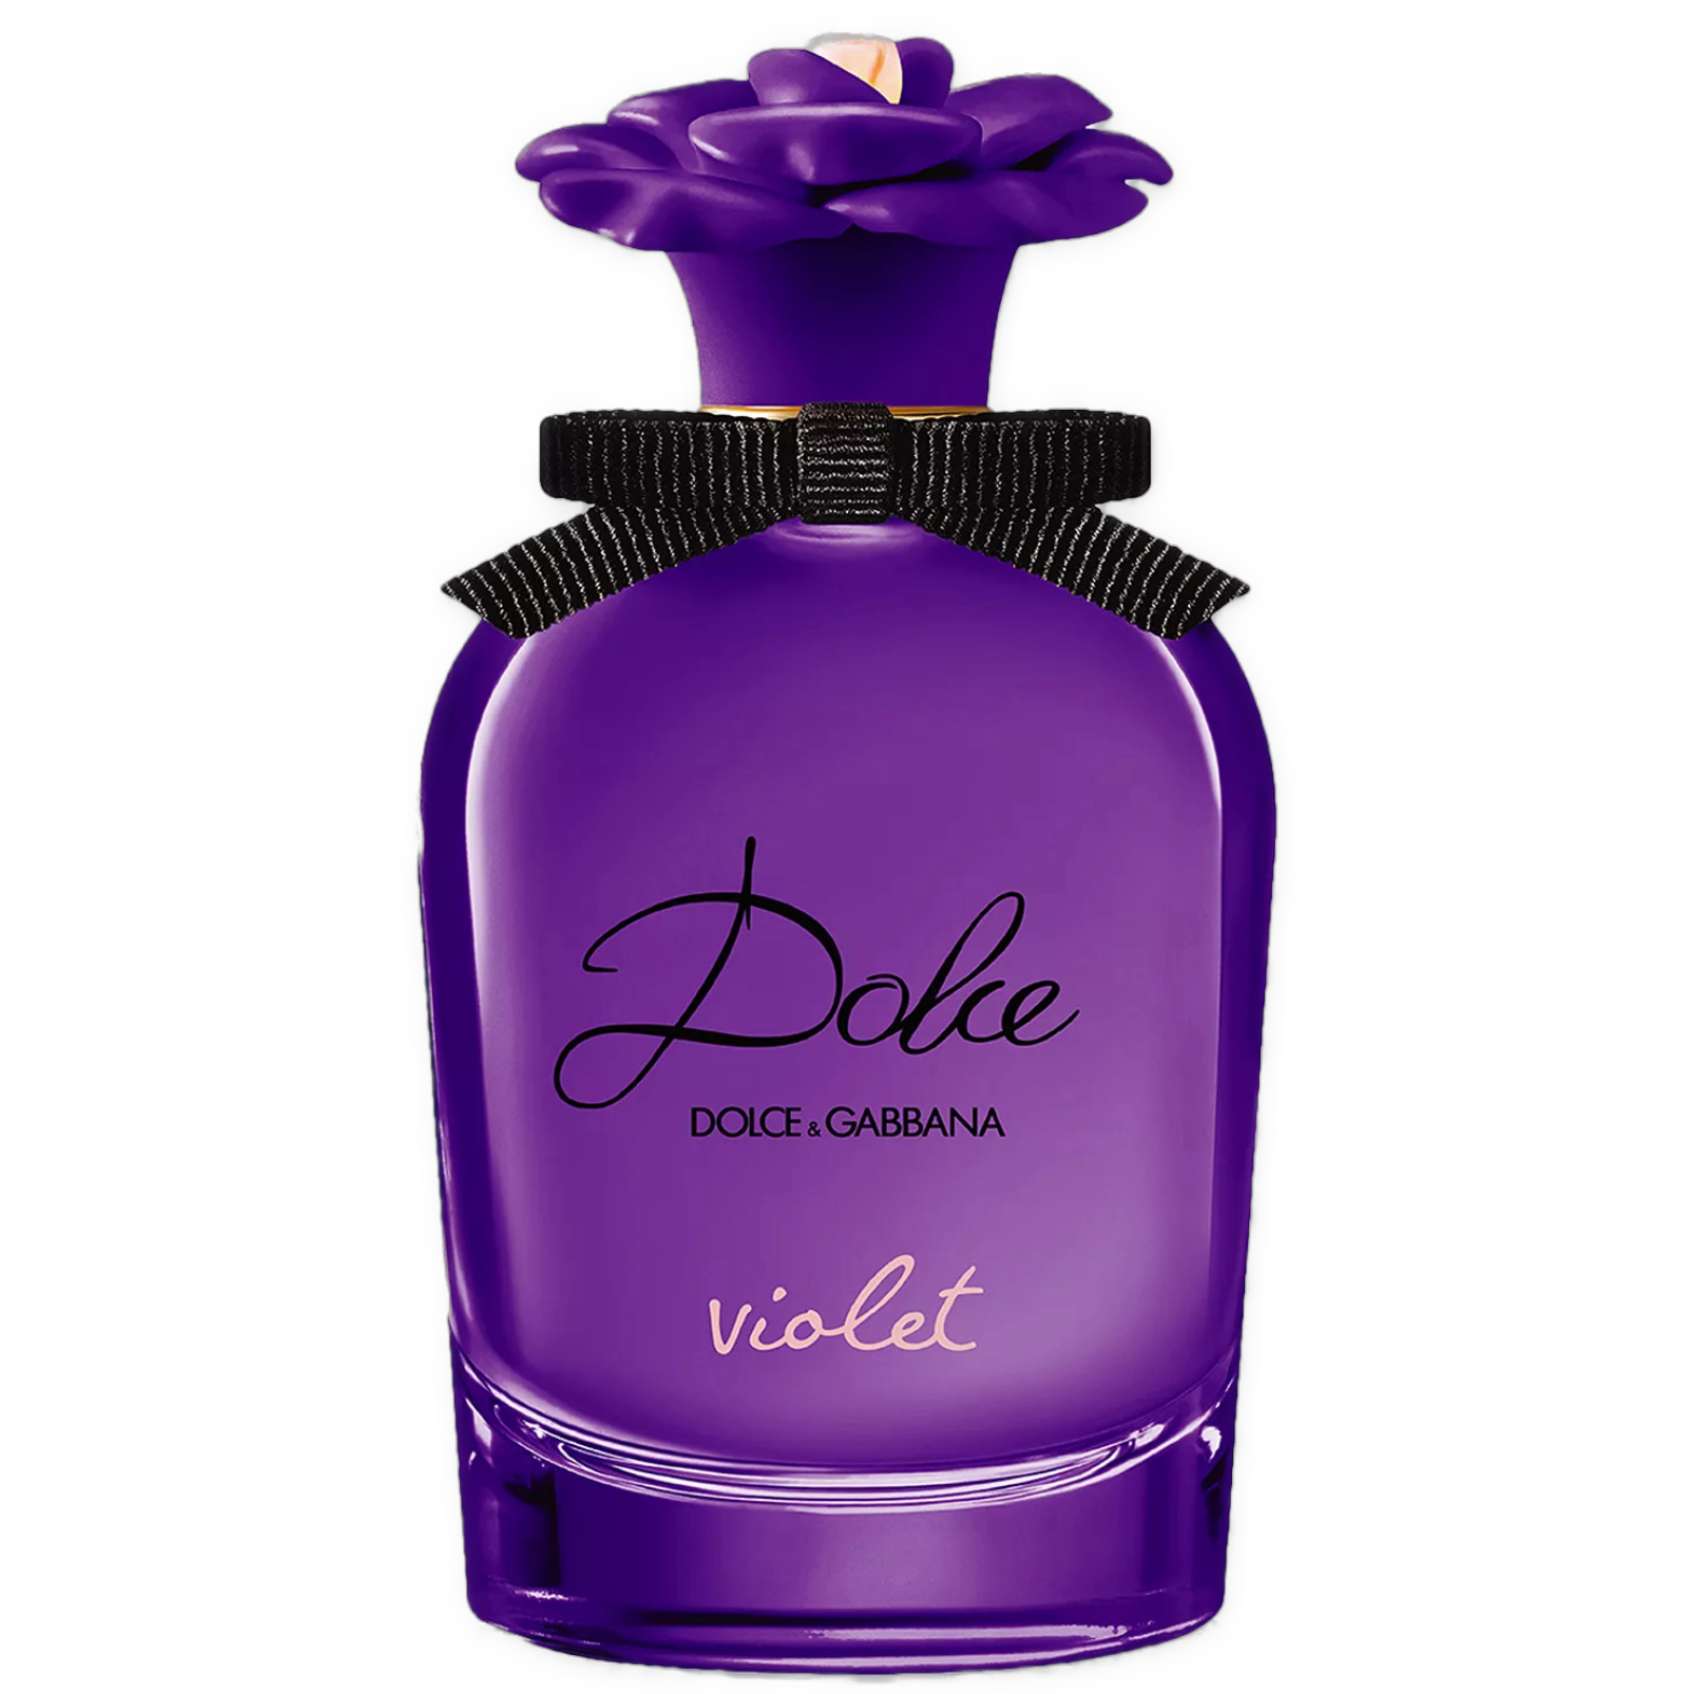 Dolce Violet - Eau de Toilette